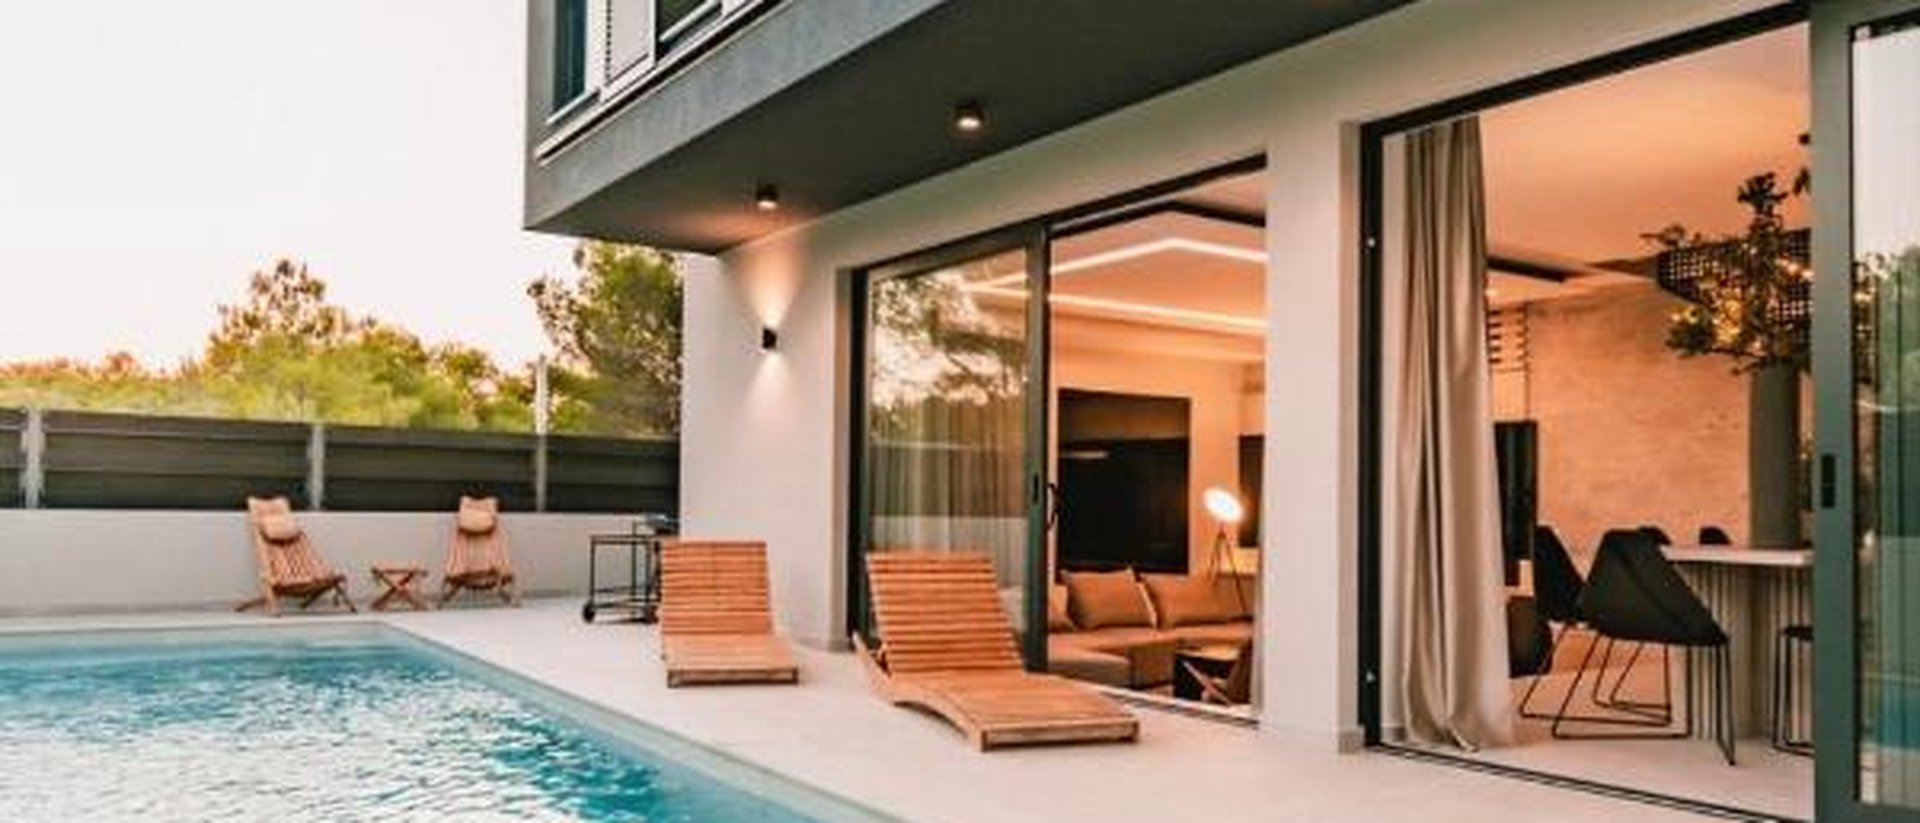 Luksuzna dizajnerska vila s bazenom 250 m od plaže - Vodice!